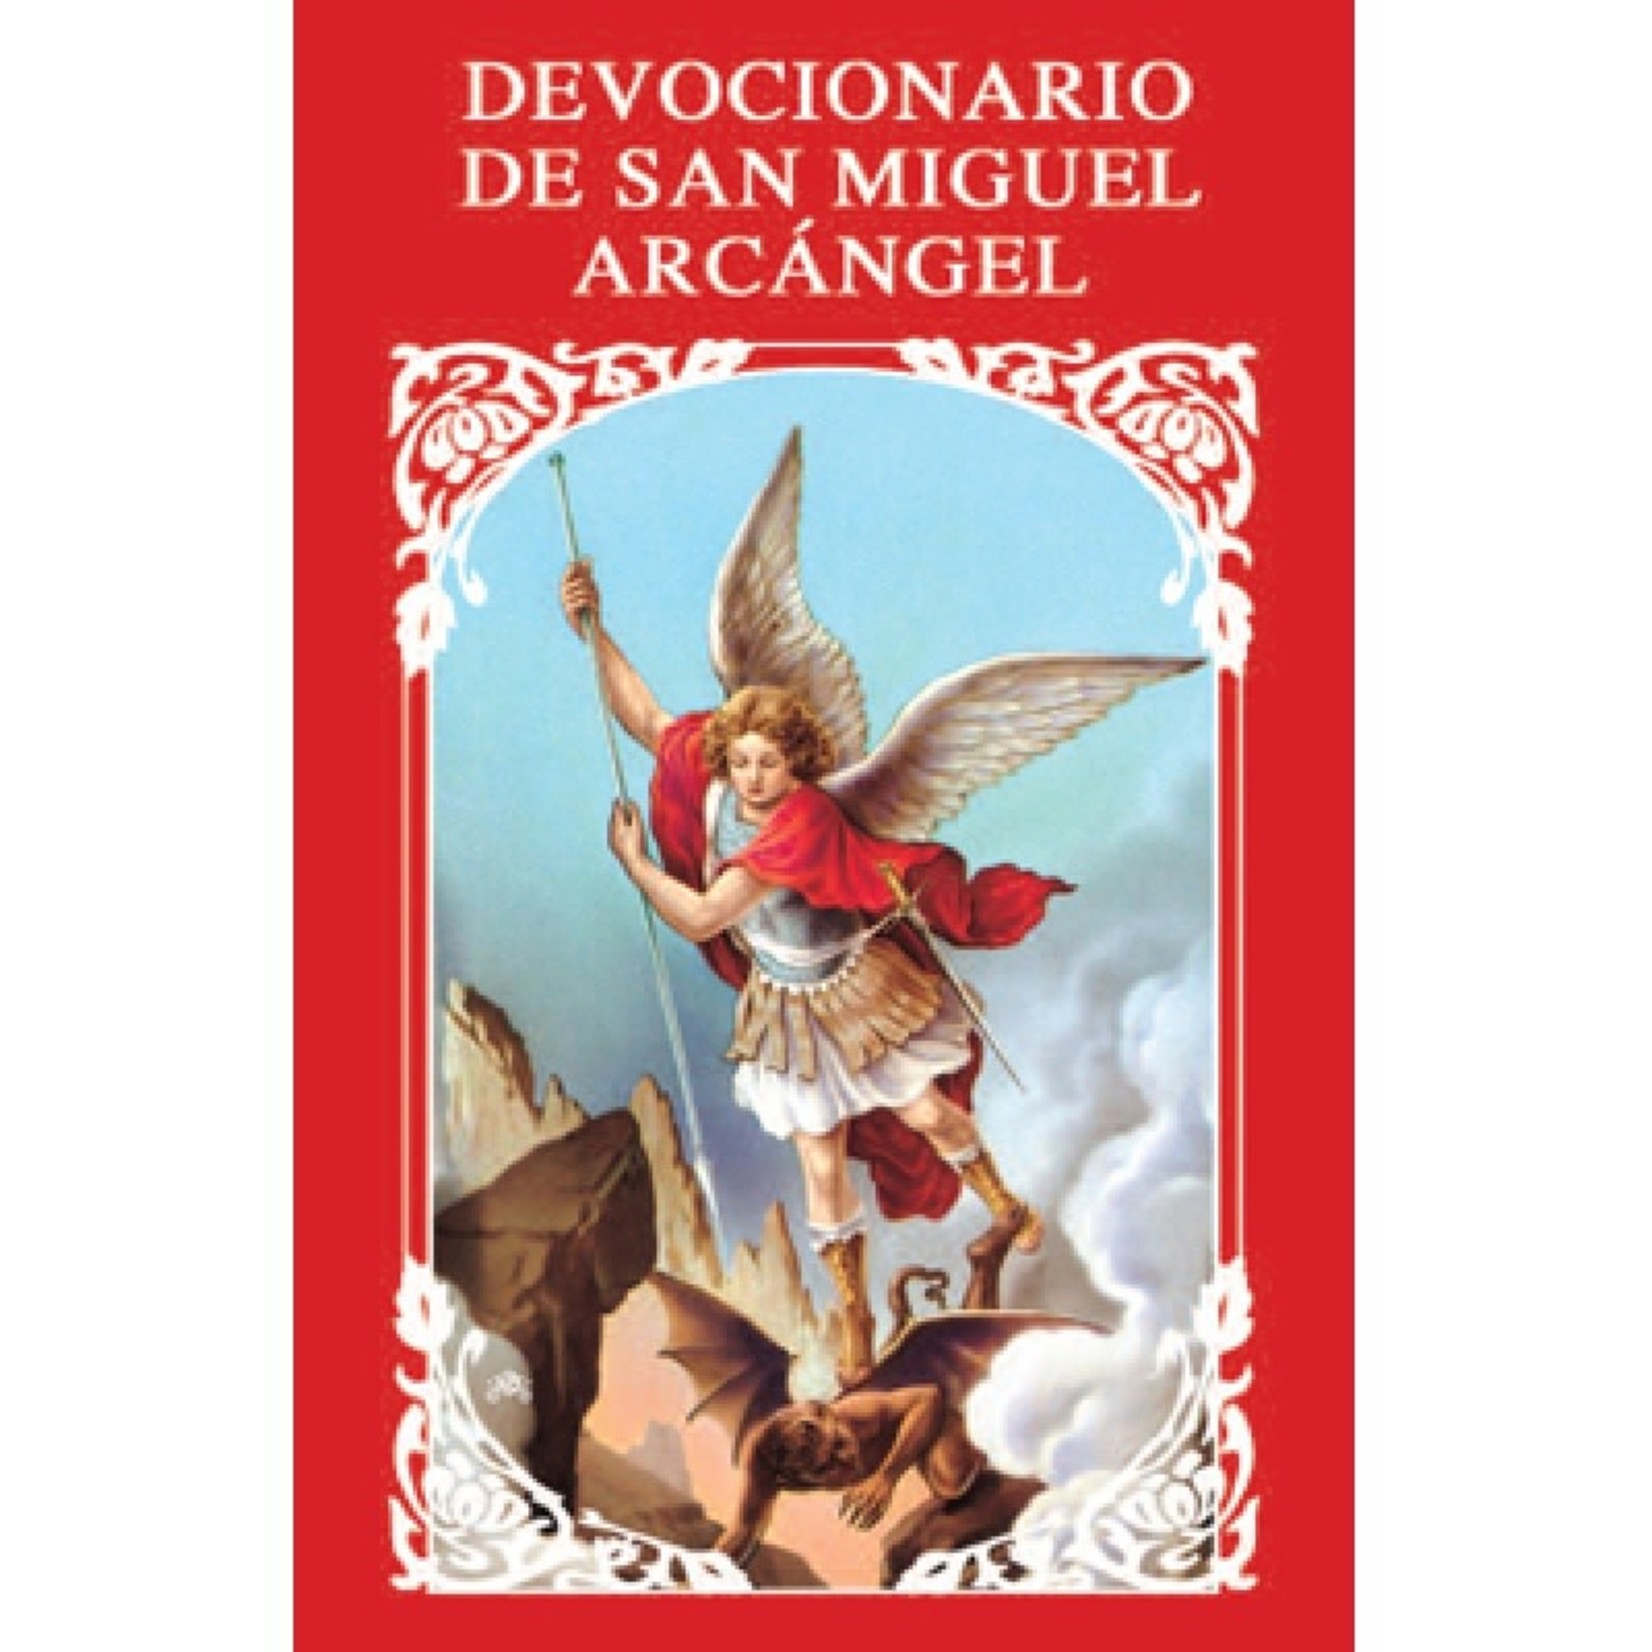 Devocionario de San Miguel Arcangel (Spanish)